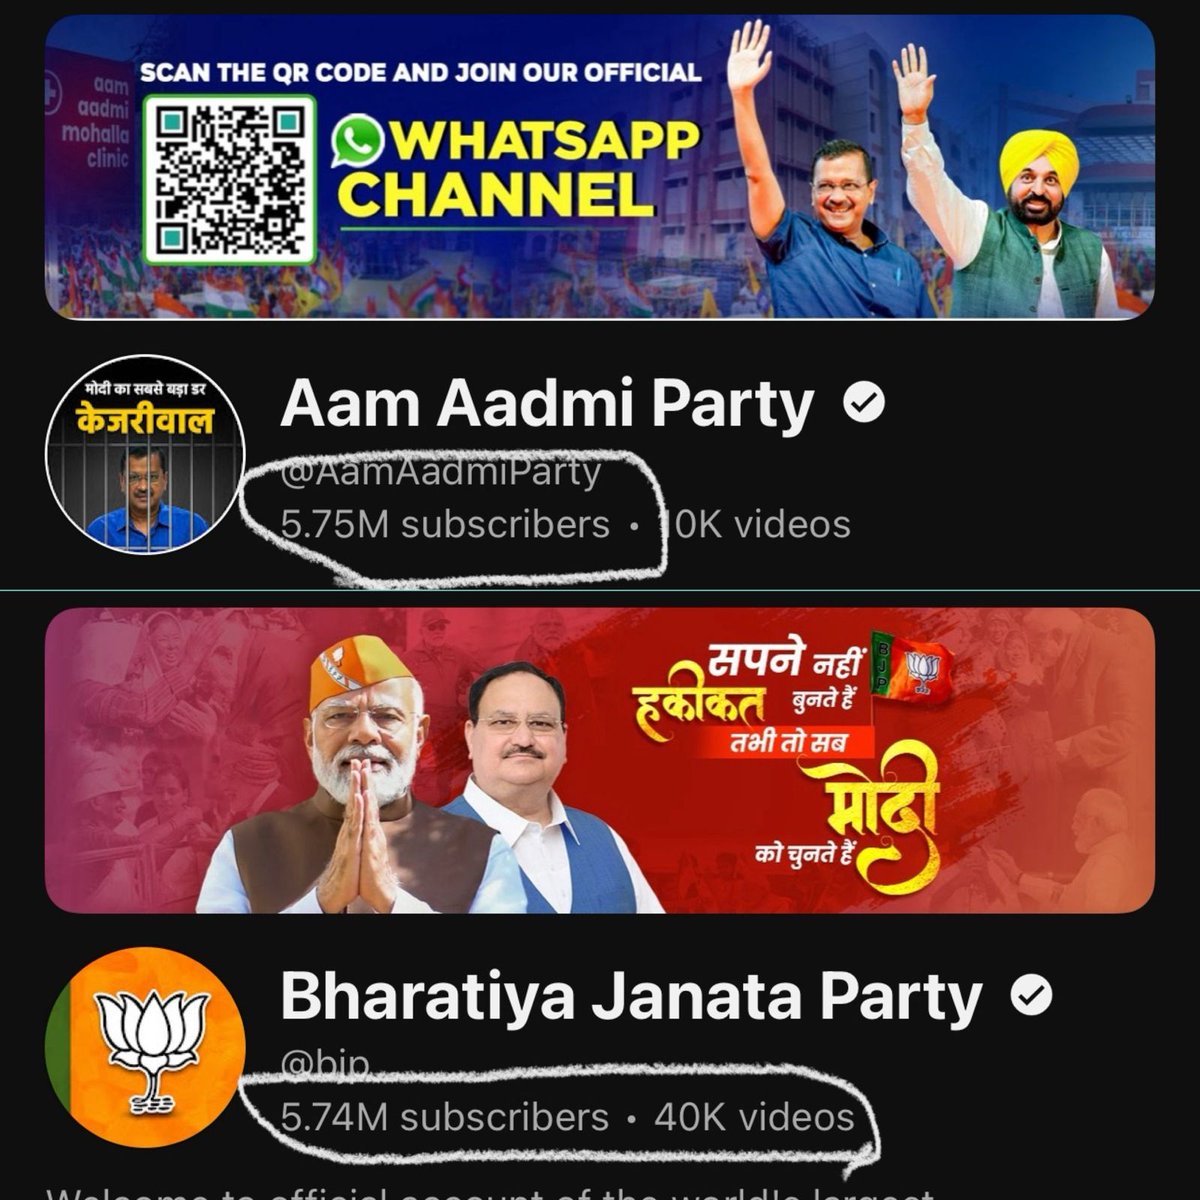 सच्चाई के सामने झूठों की फैक्ट्री और व्हाट्सएप यूनिवर्सिटी हुई फेल! @AamAadmiParty का YouTube channel निकला @BJP4India से भी आगे, भारत में राजनीतिक दलों के बीच नंबर 1 चैनल बनकर उभरा 🔥